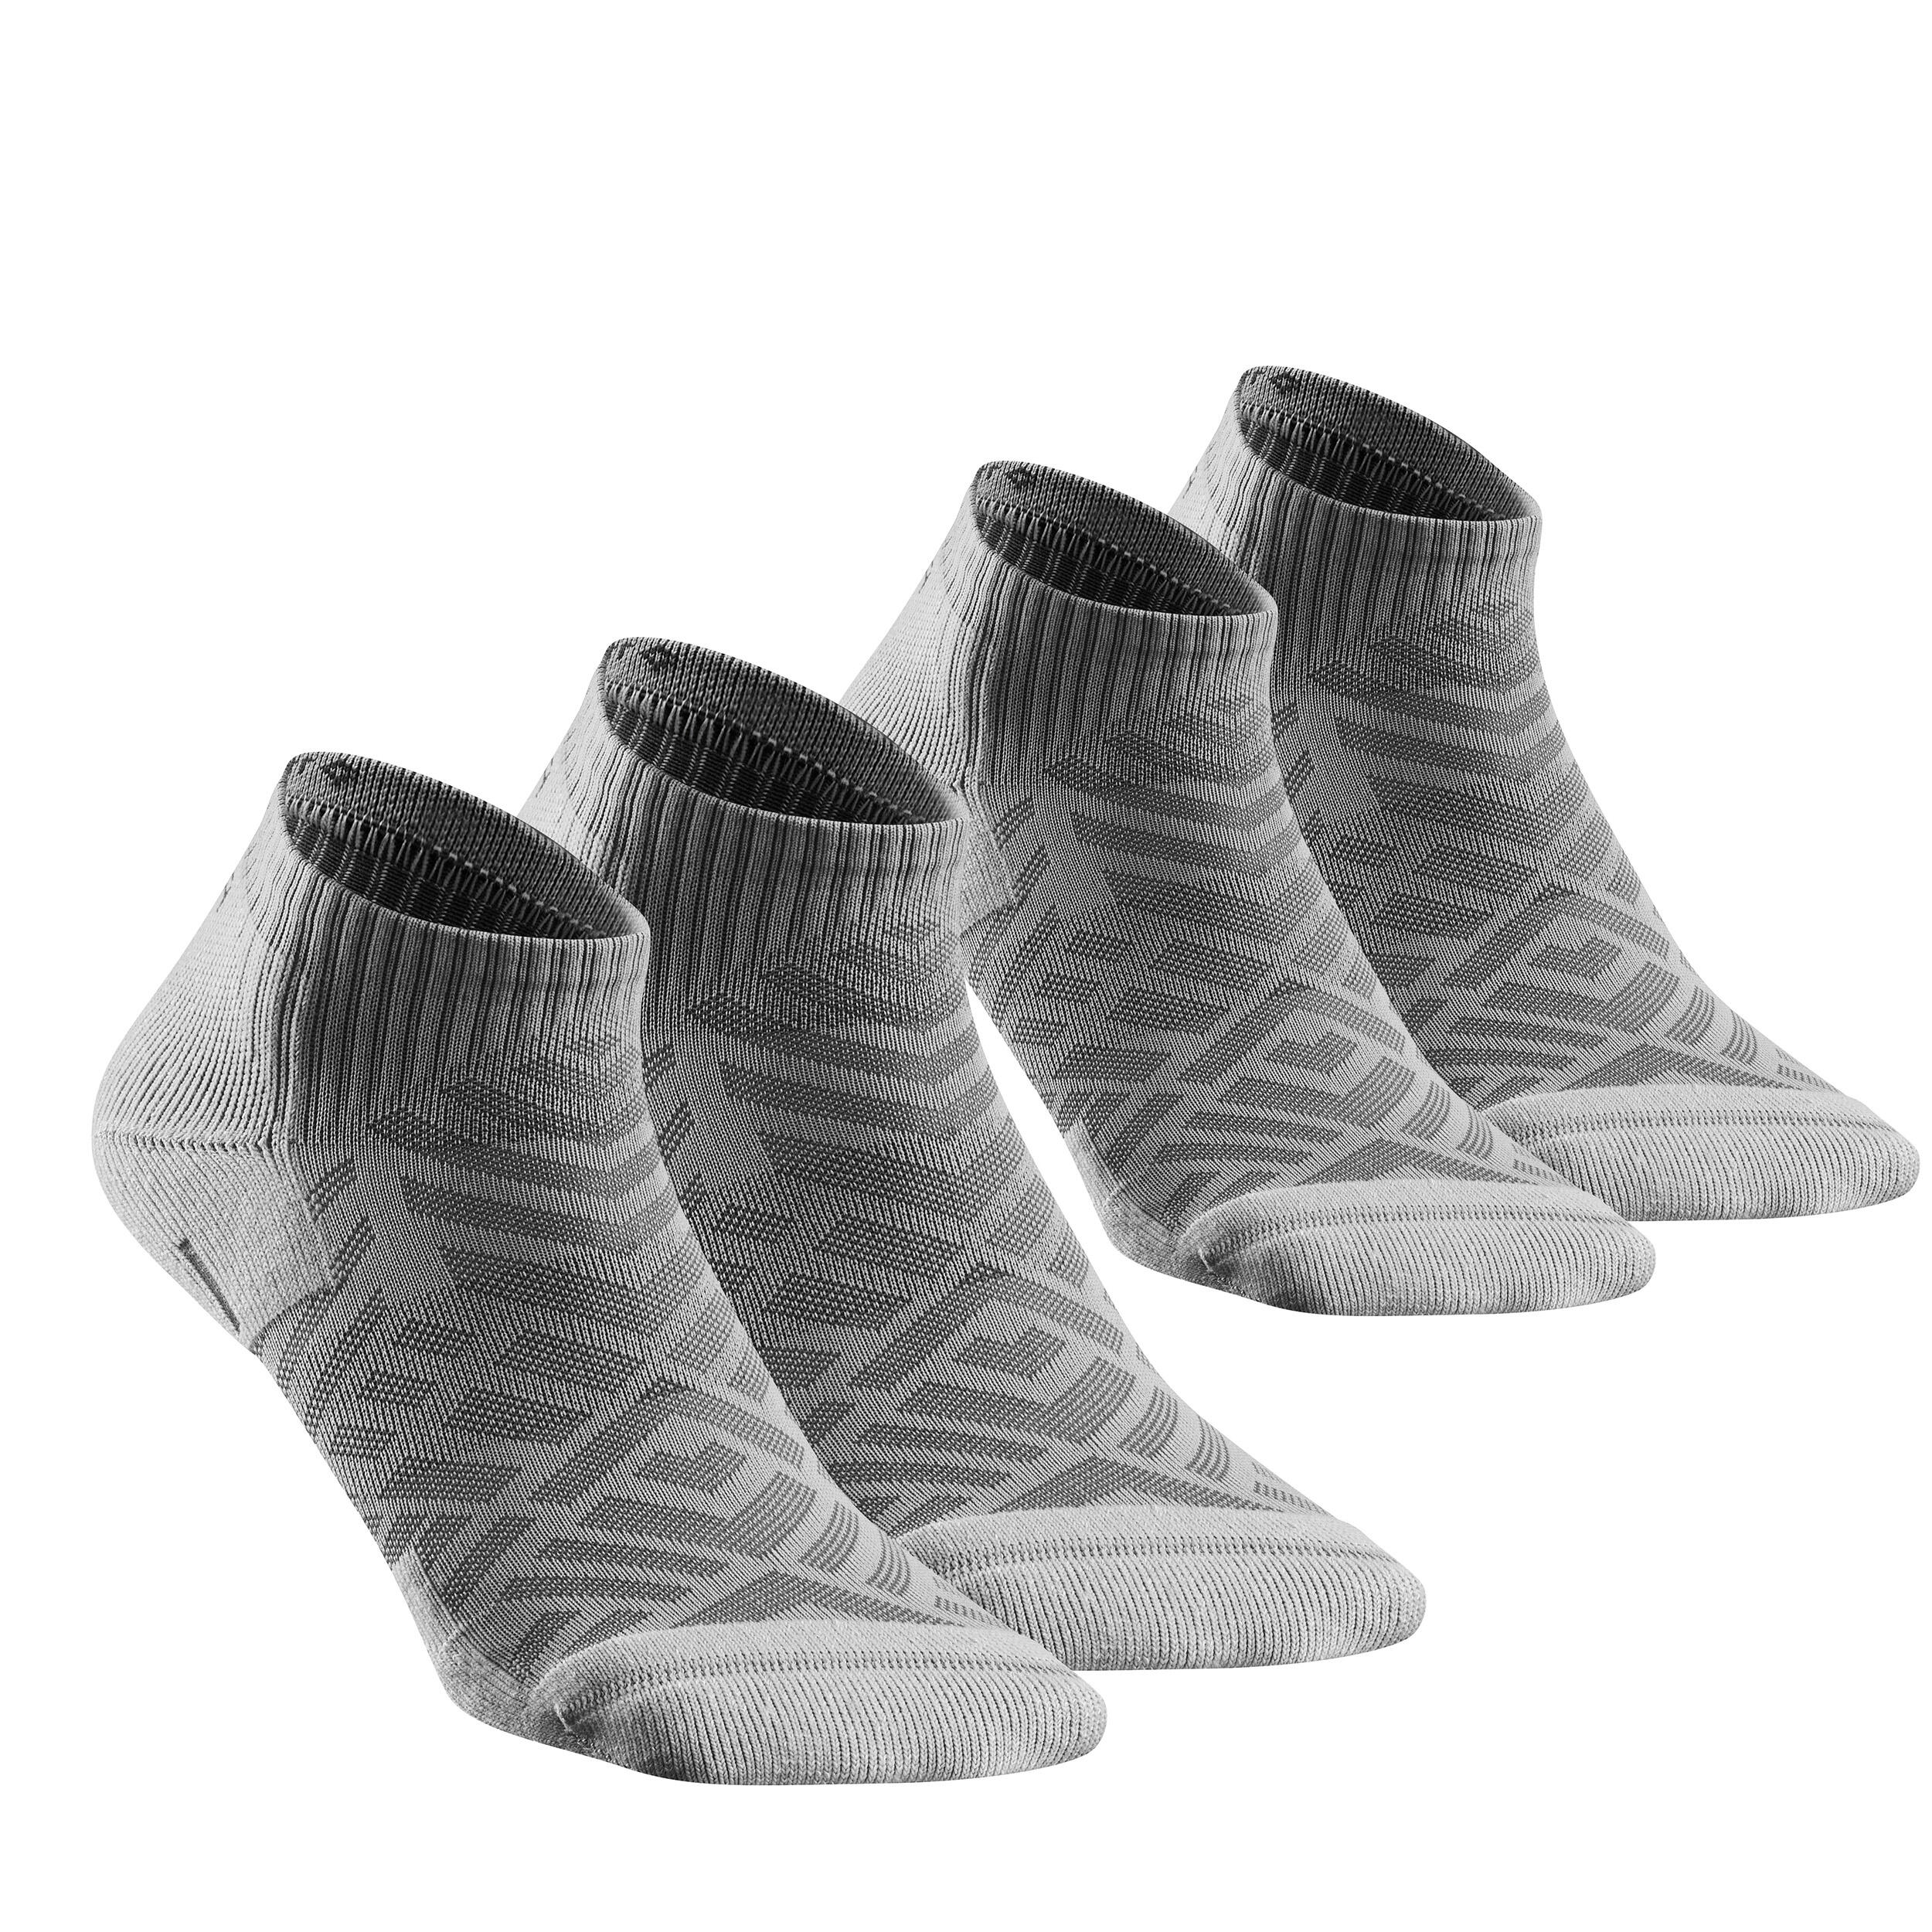 Falechay Chaussettes Basses pour Femmes Hommes 8 Paires Socquettes de Sport en Coton Antiglisse des Décontractées 